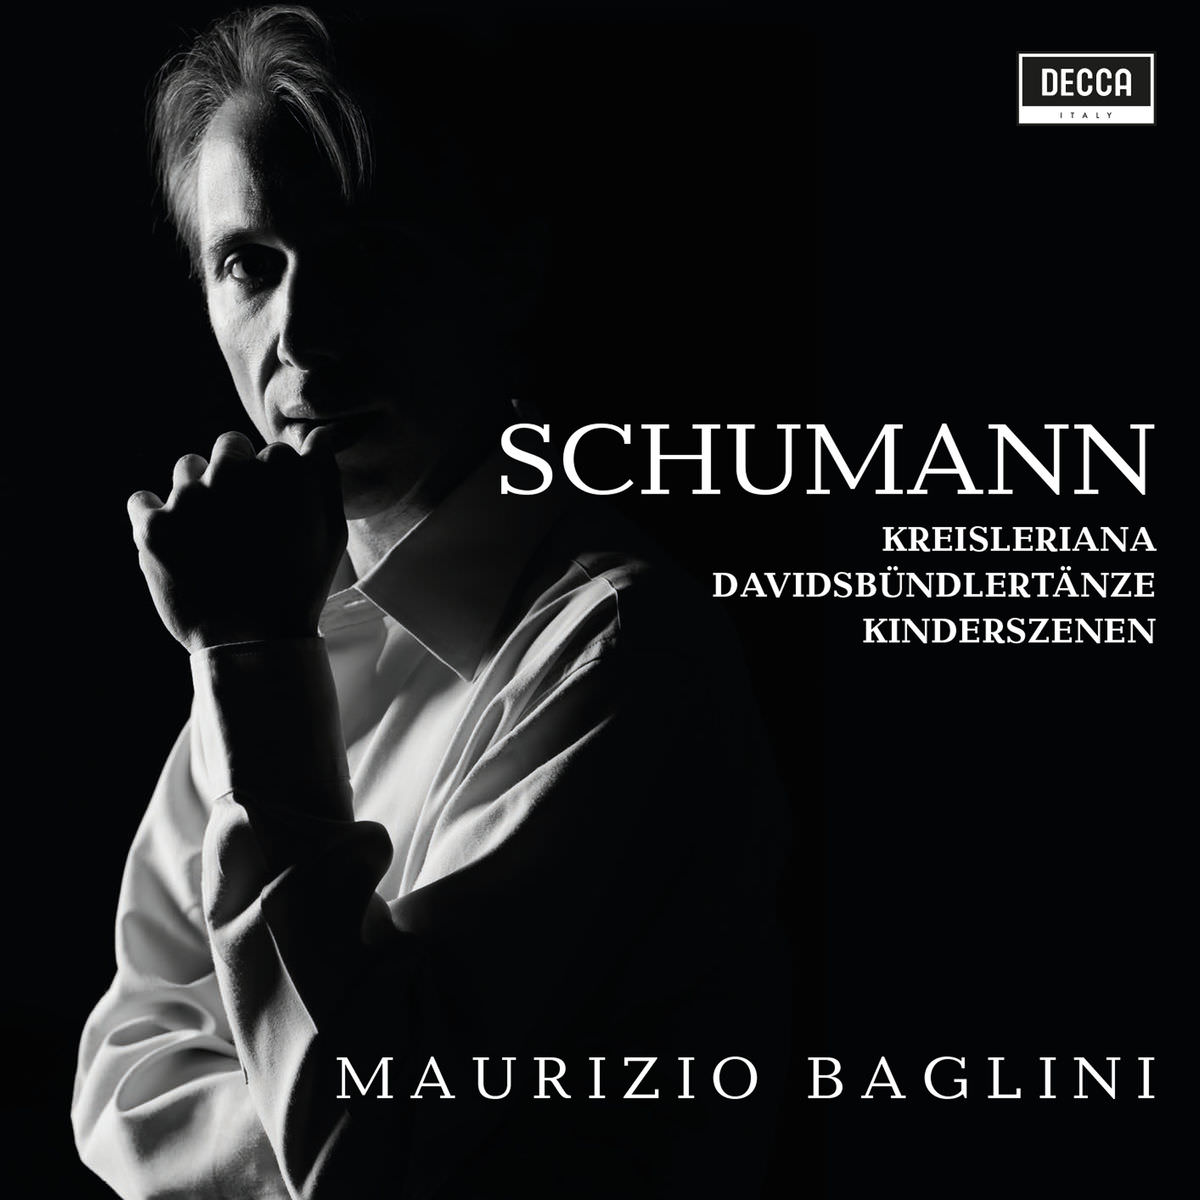 Maurizio Baglini - Schumann: Kreisleriana, Davidsbundlertanze, Kinderszenen (2018) [FLAC 24bit/96kHz]